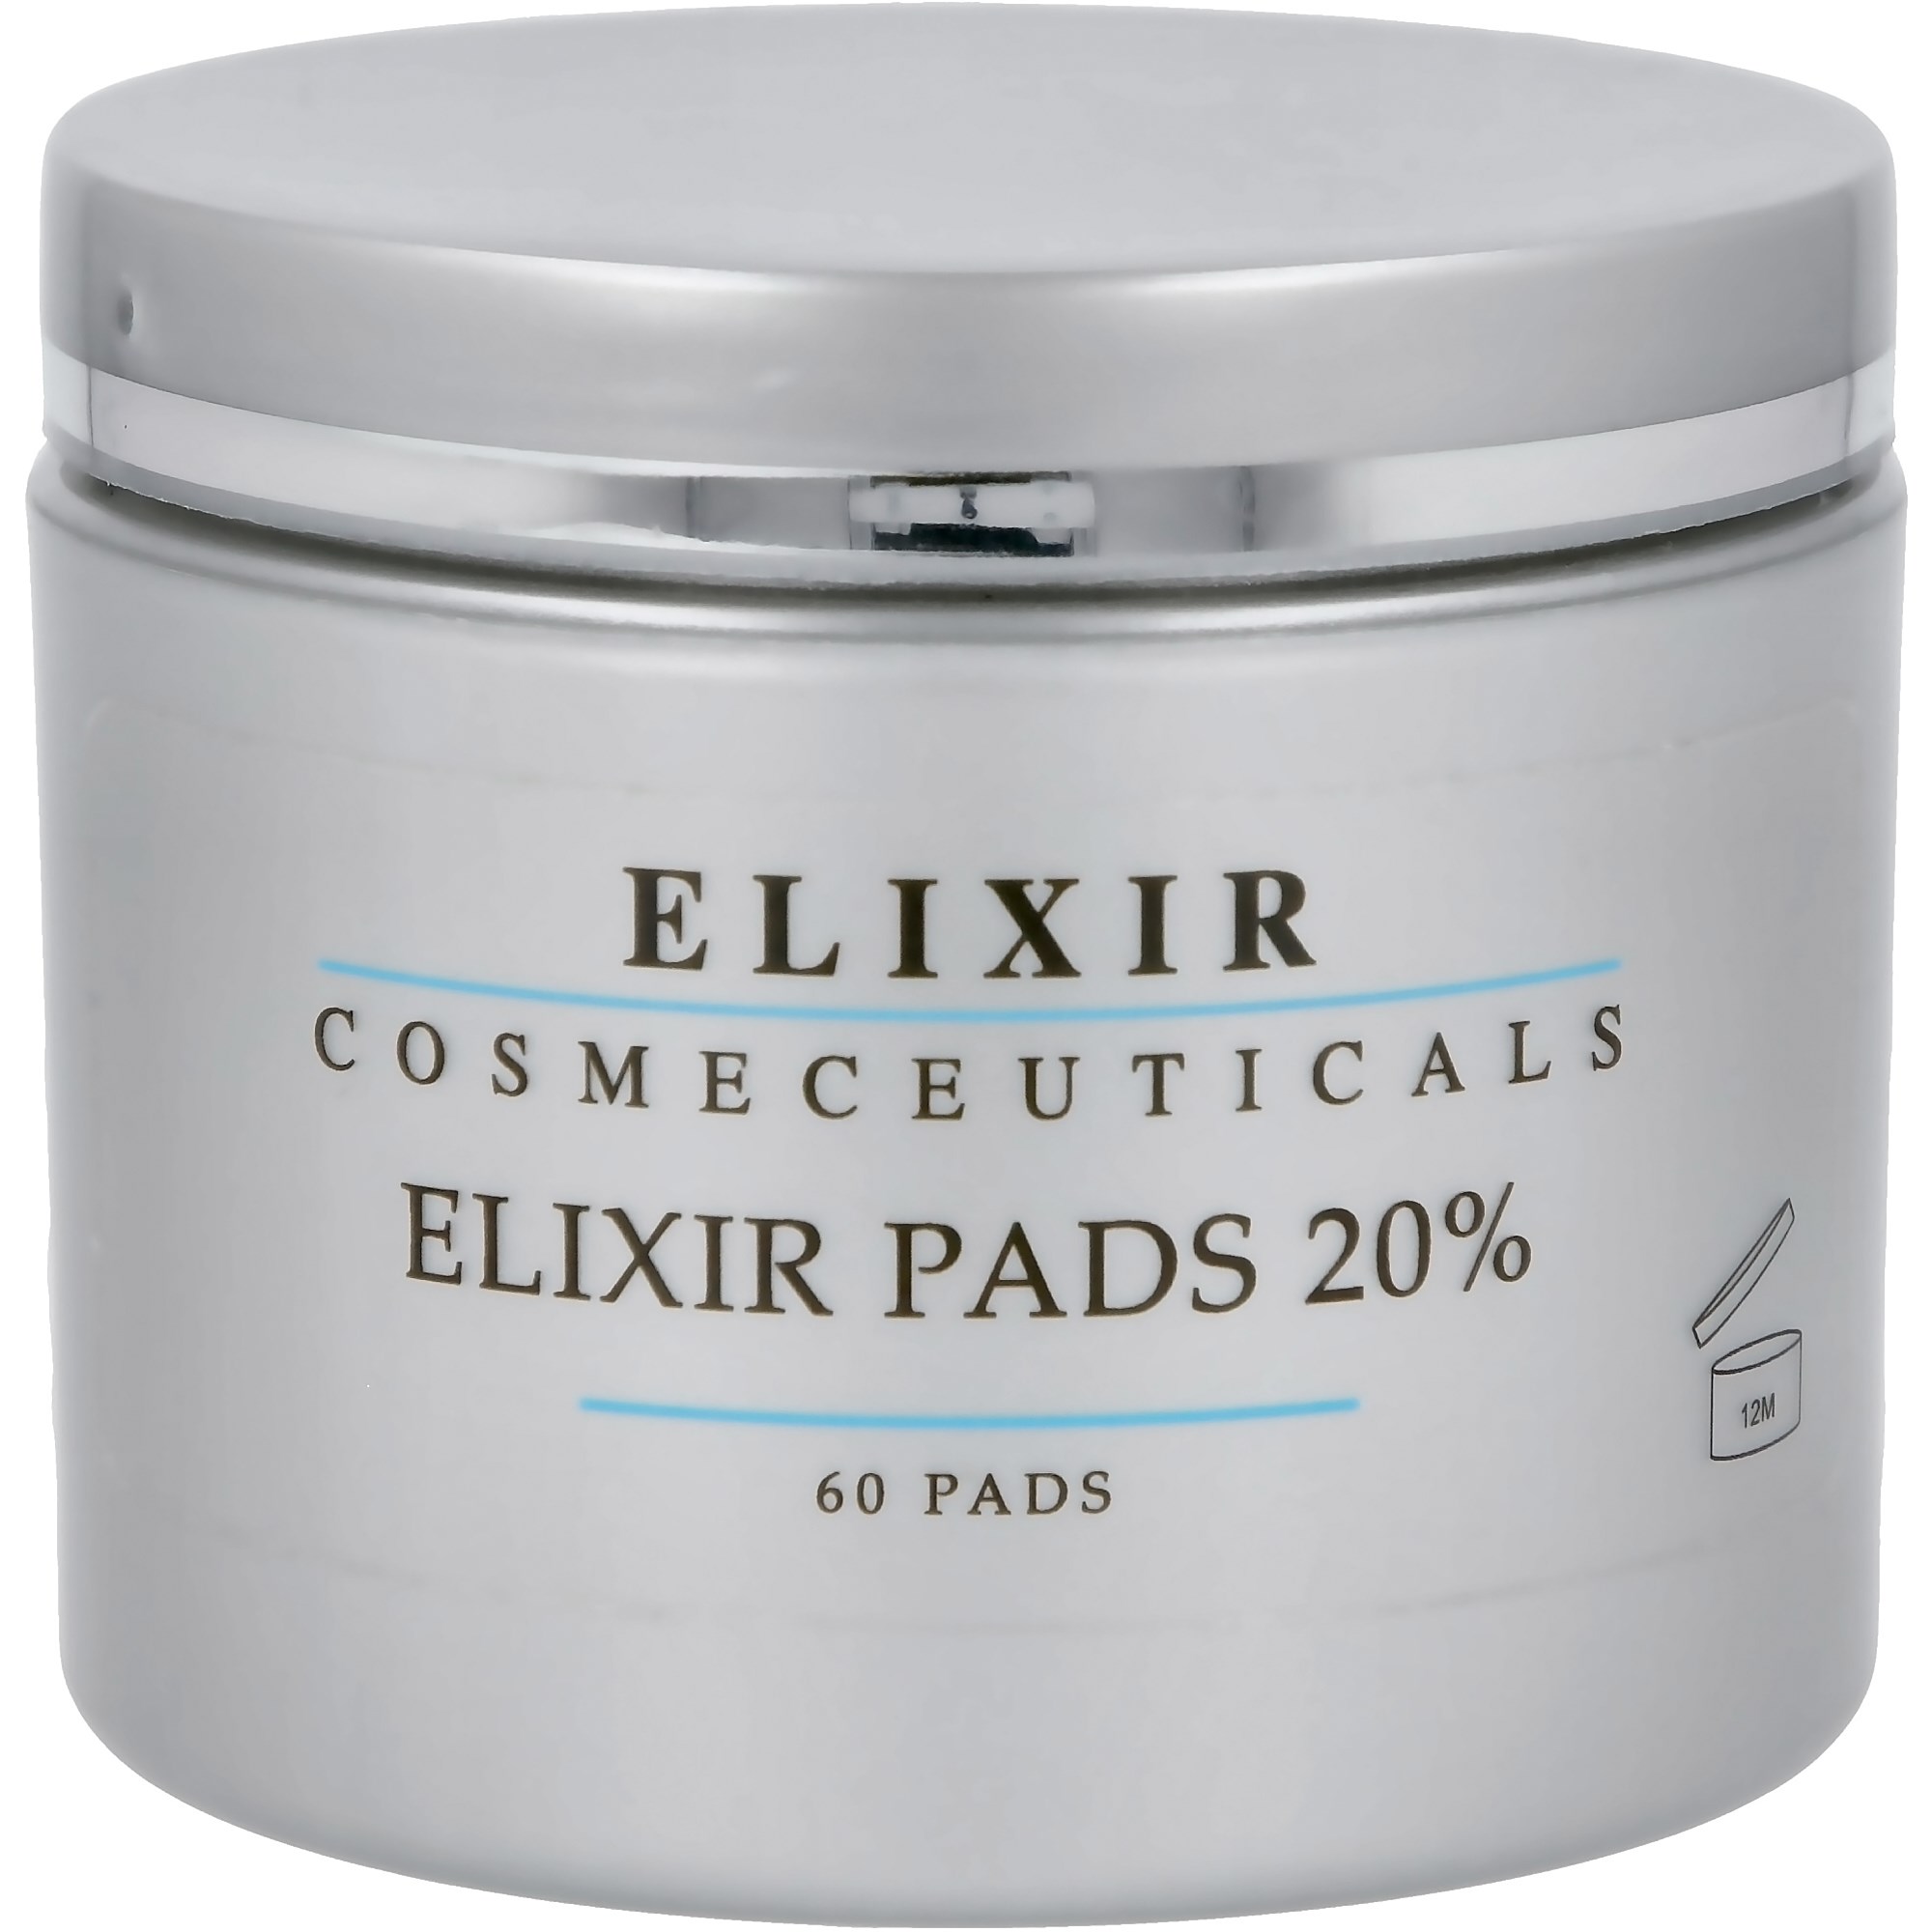 Läs mer om Elixir Cosmeceuticals Elixir pads 20%